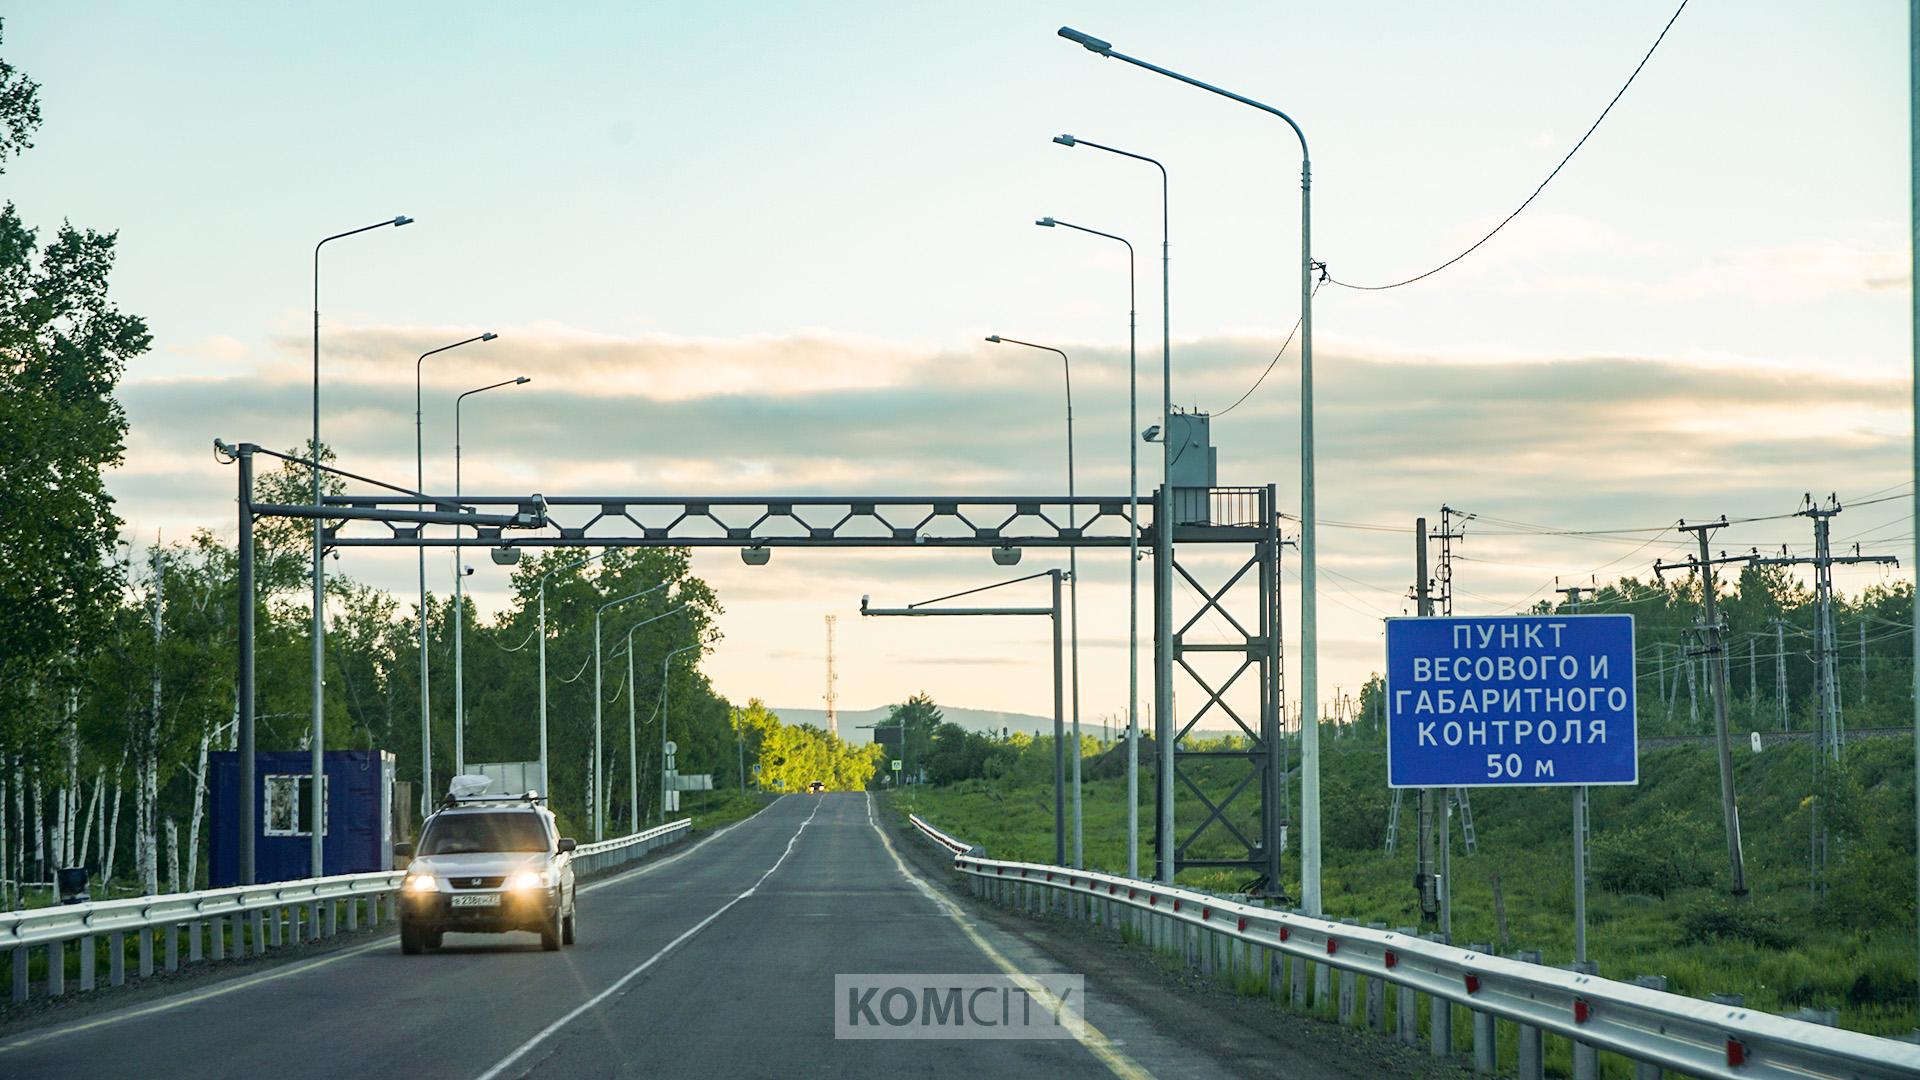 На трассе Хабаровск — Комсомольск появится пункт весового контроля